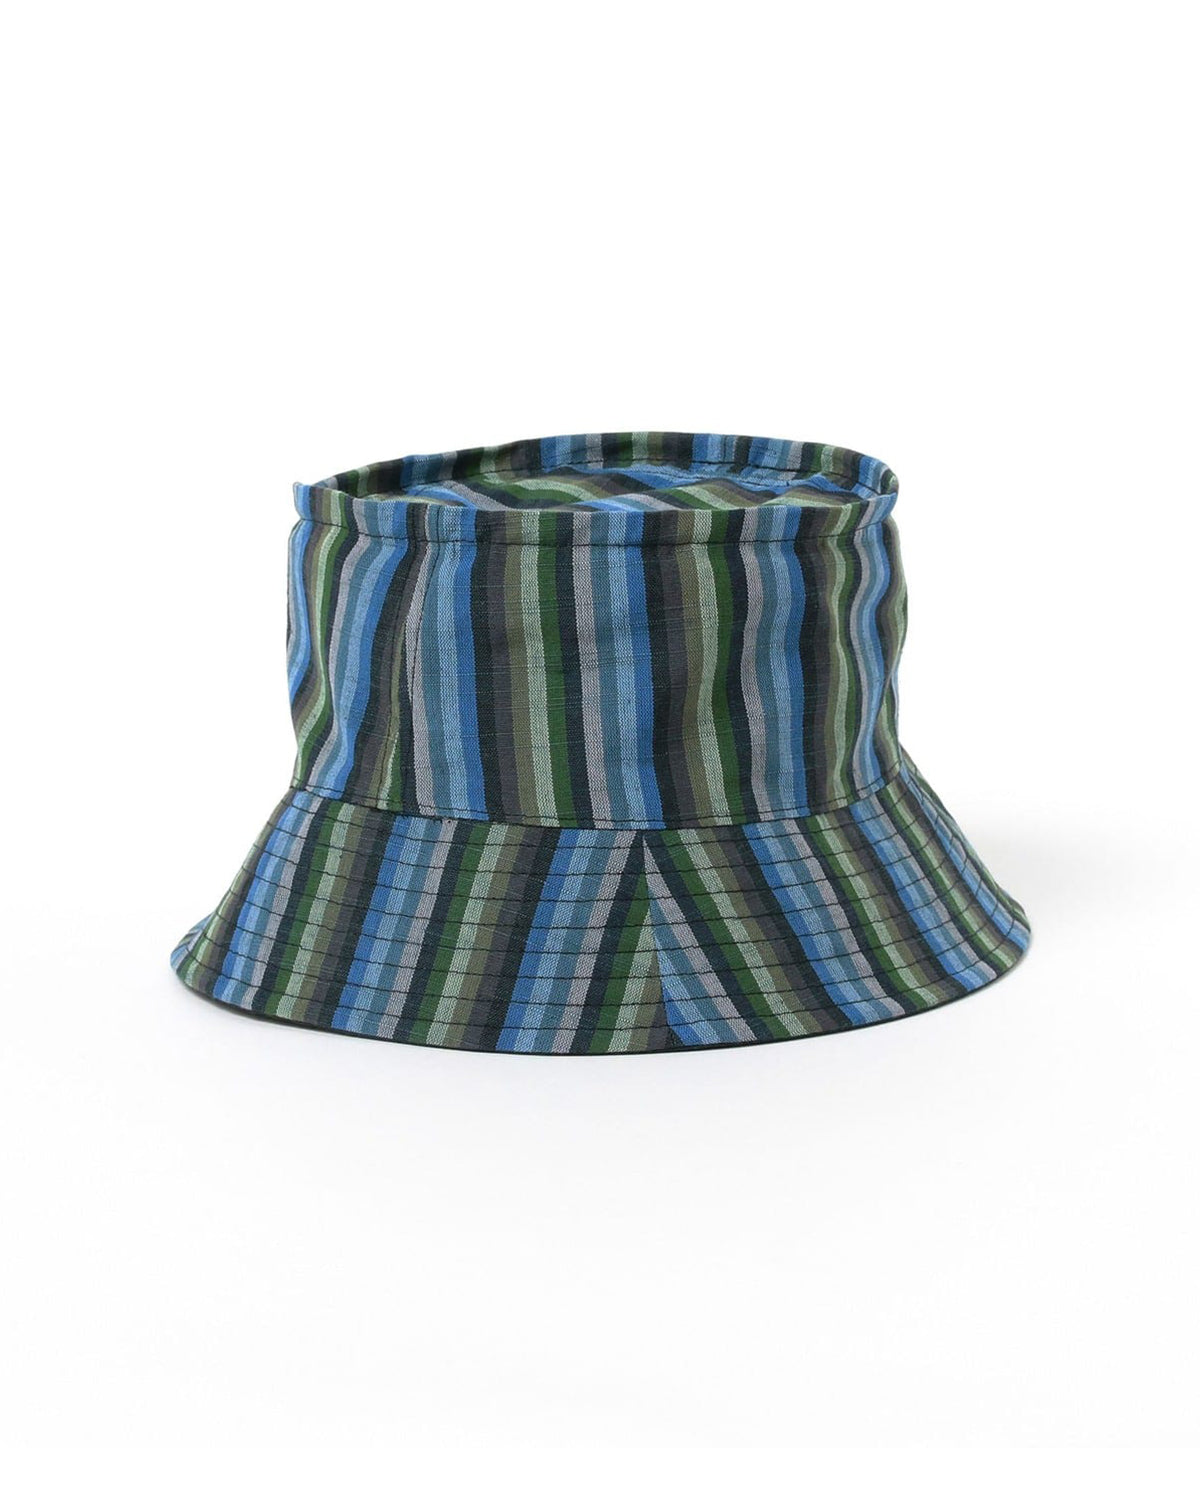 Nylon Bucket Hat Khaki / One Size by Pilgrim Surf Supply